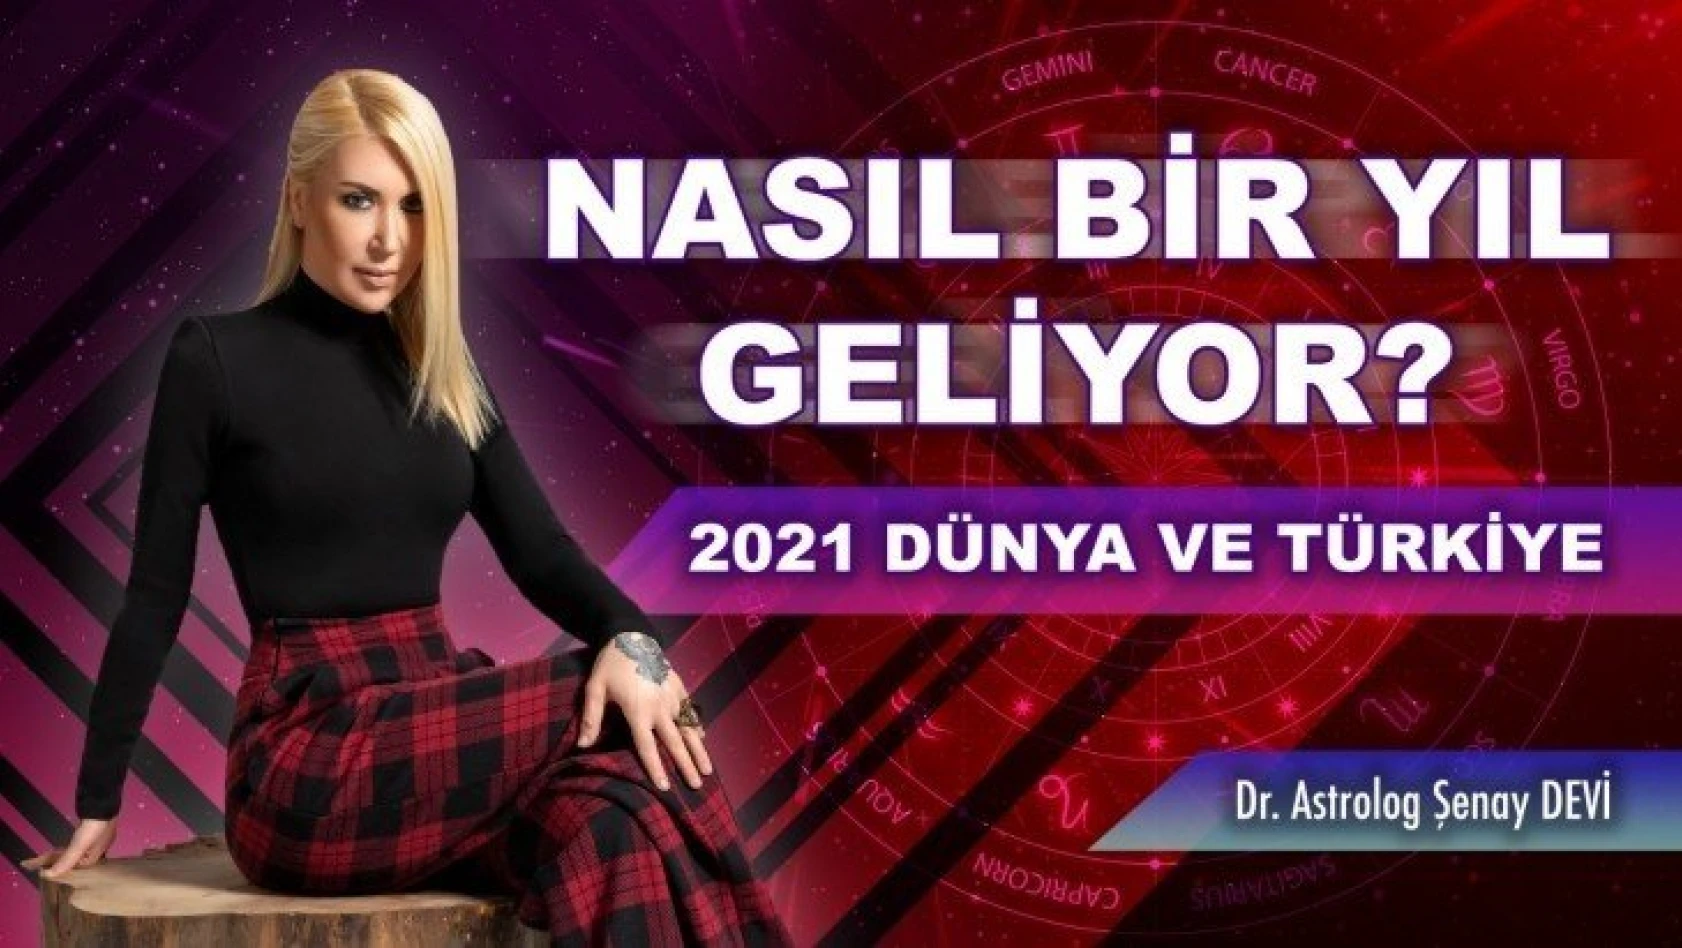 2021'de dünya ve Türkiye neler olacak? Nasıl bir yıl geliyor? Dr. Astrolog Şenay Devi anlattı!